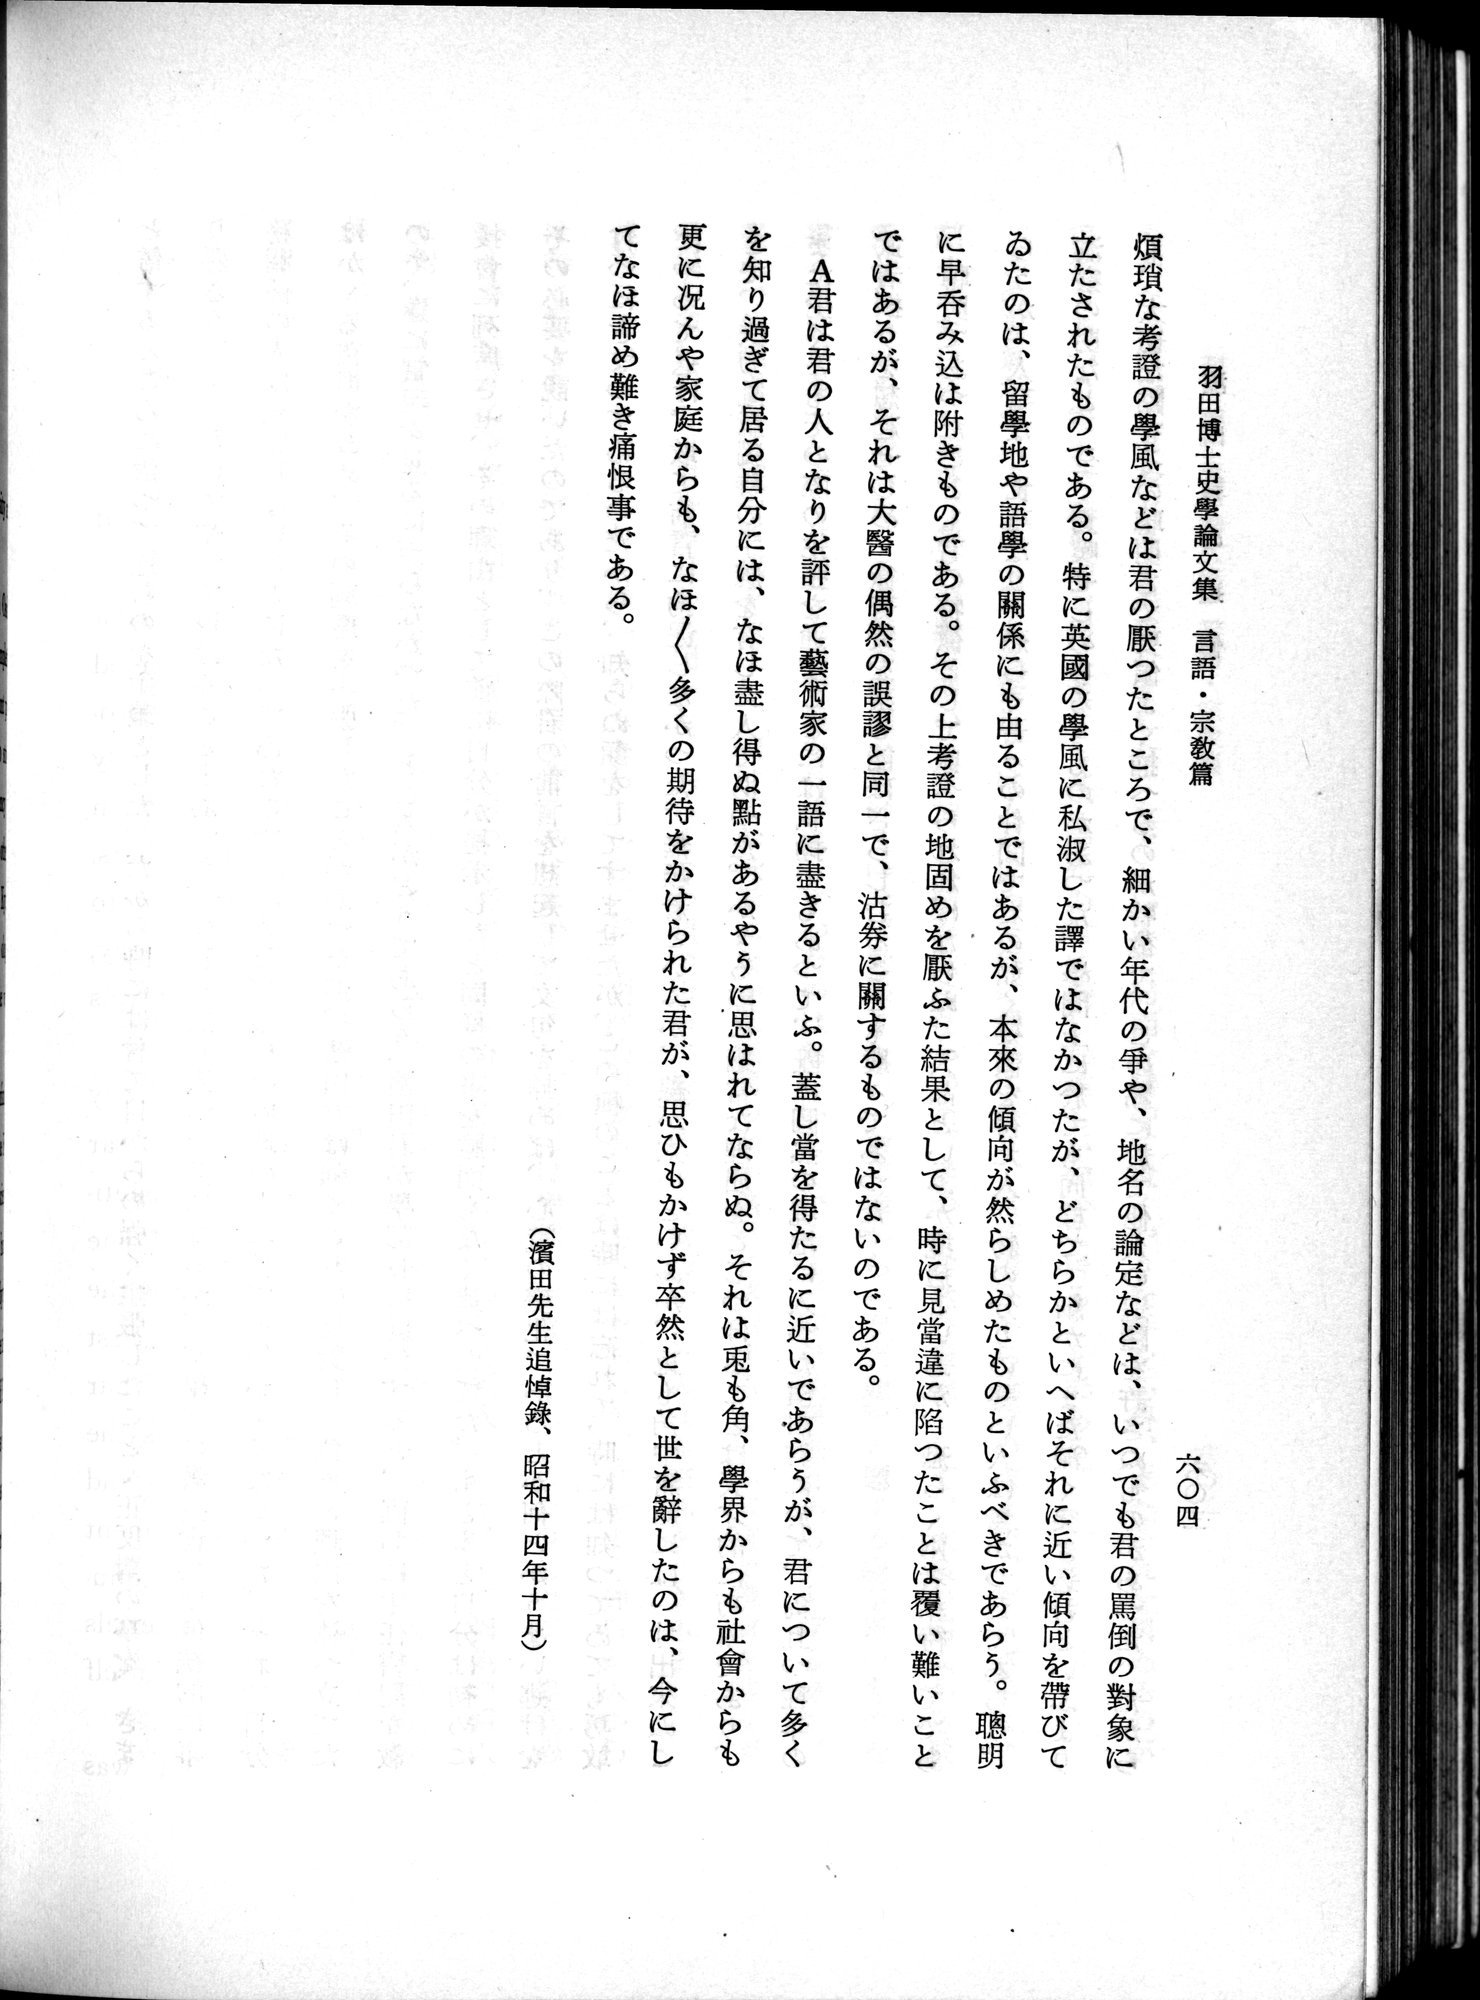 羽田博士史学論文集 : vol.2 / Page 668 (Grayscale High Resolution Image)